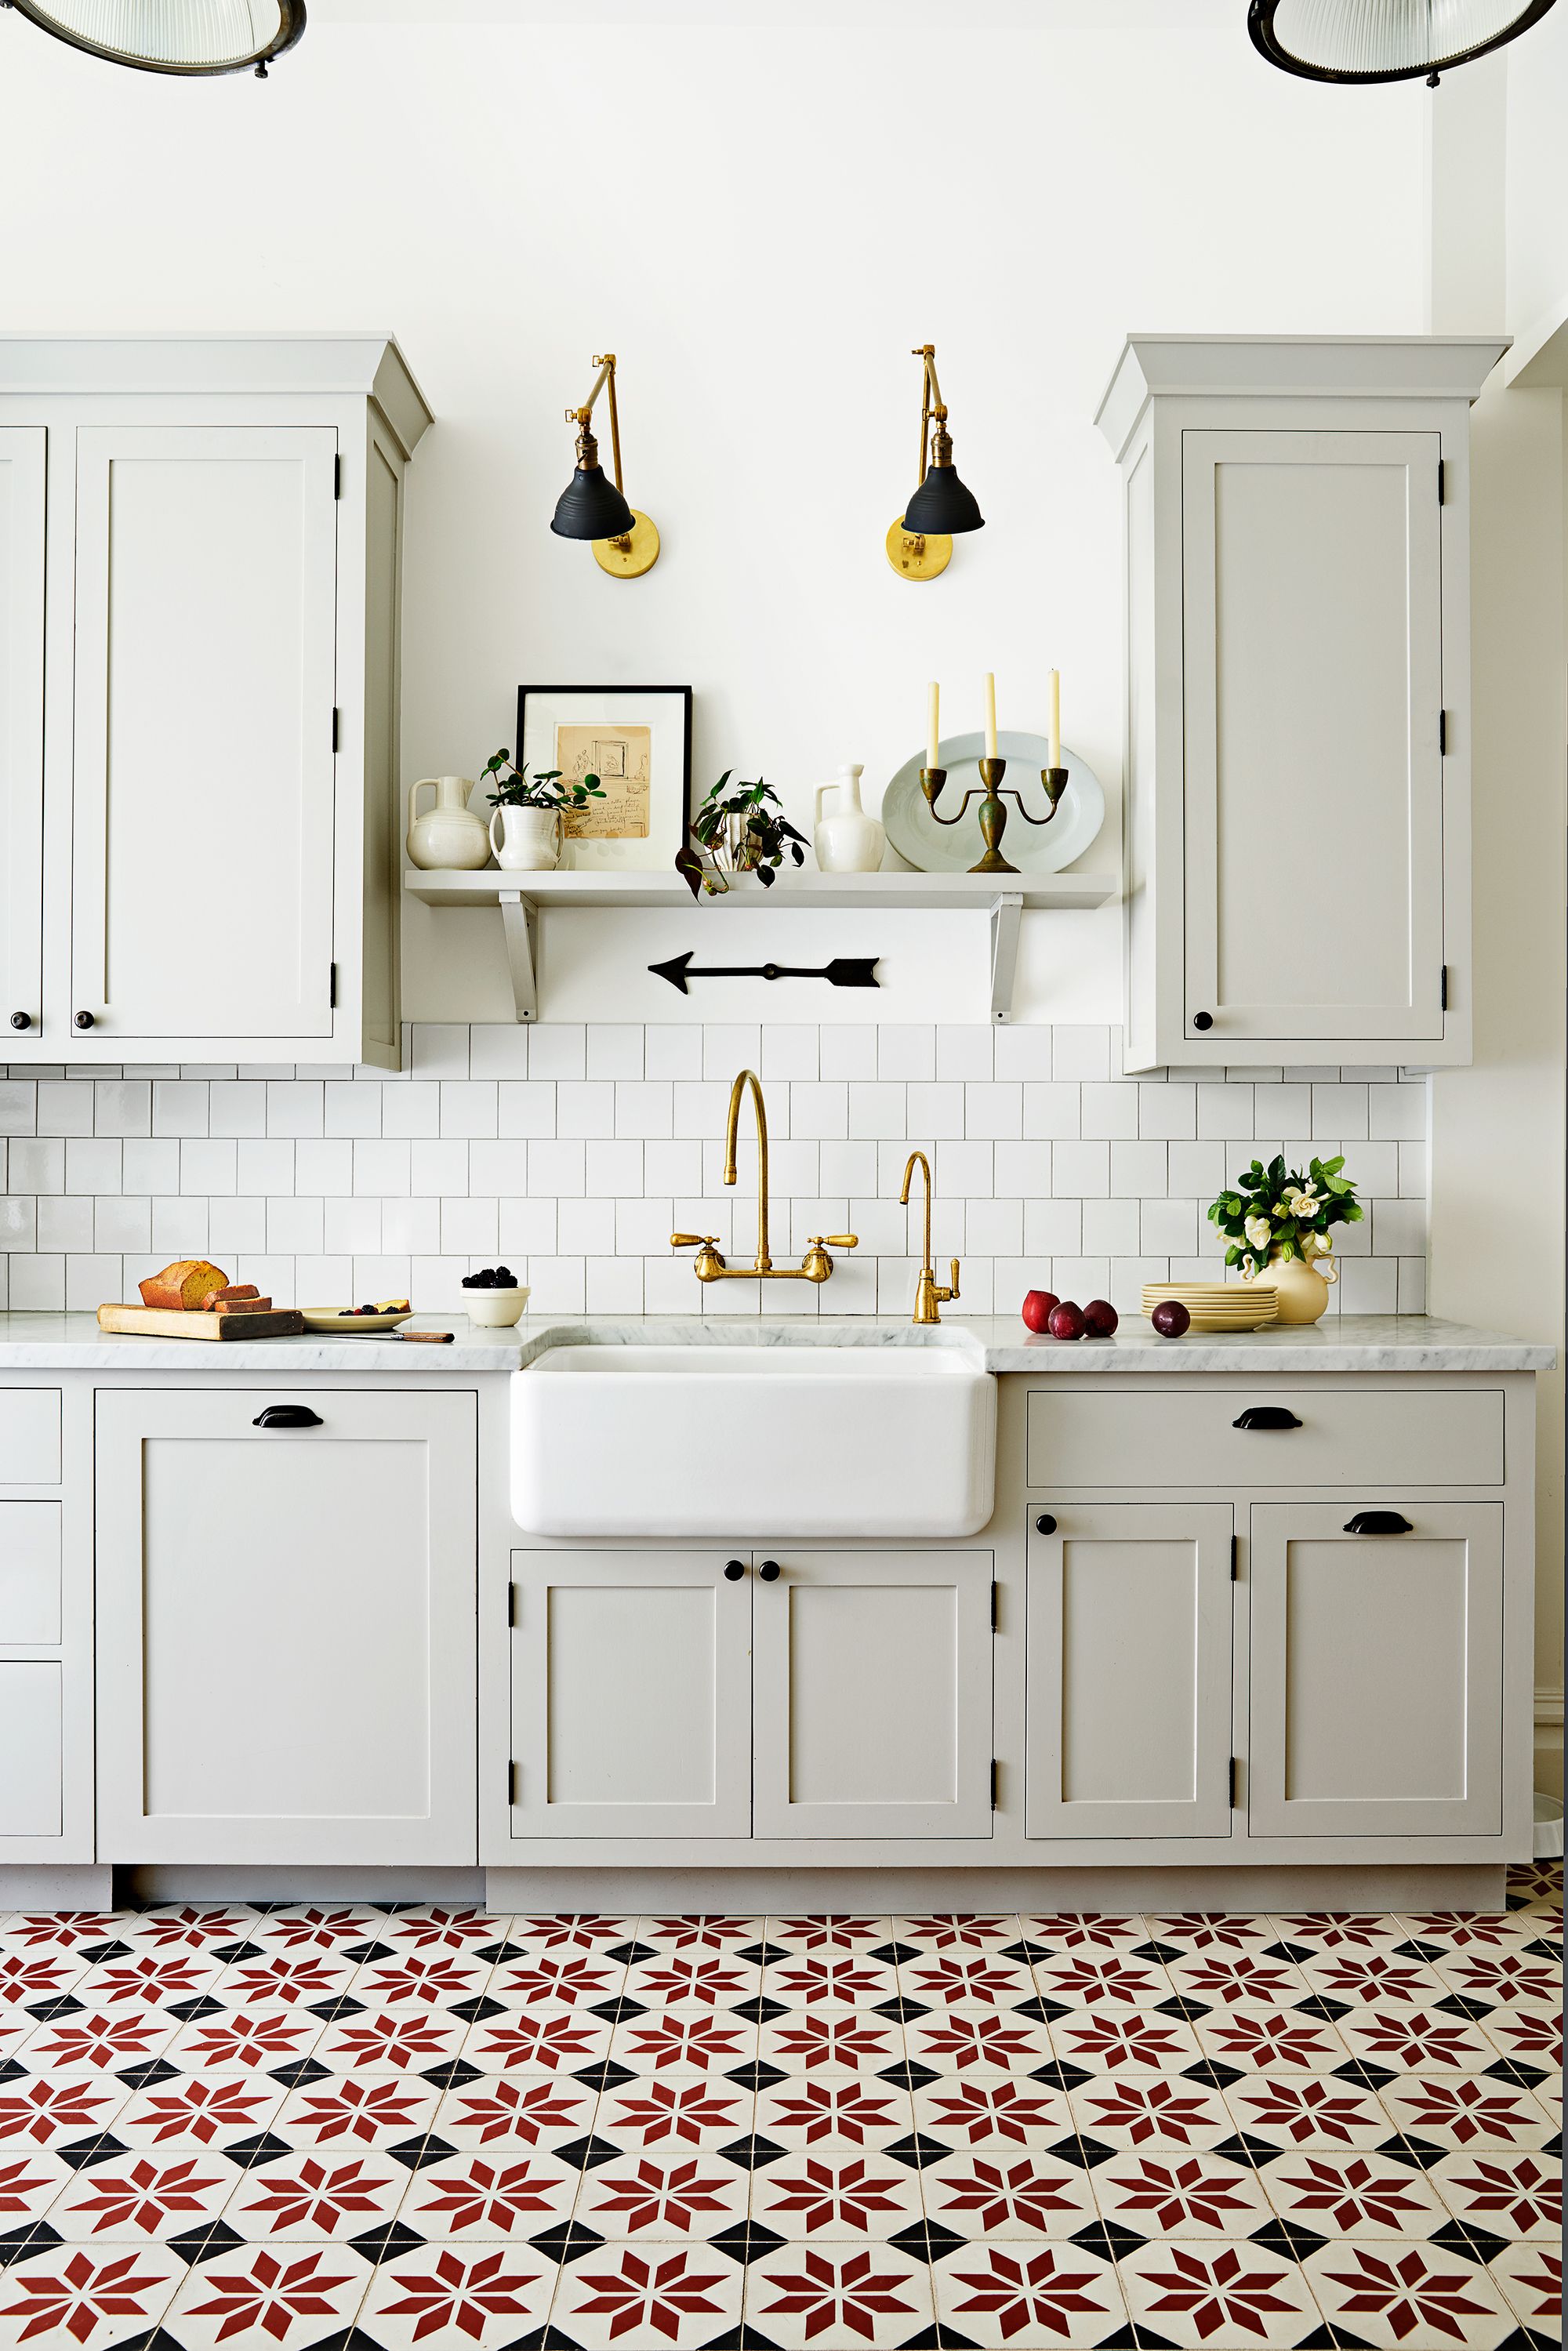 18 Modern Floor Tile Designs The Best, Small Floor Tiles For Kitchen